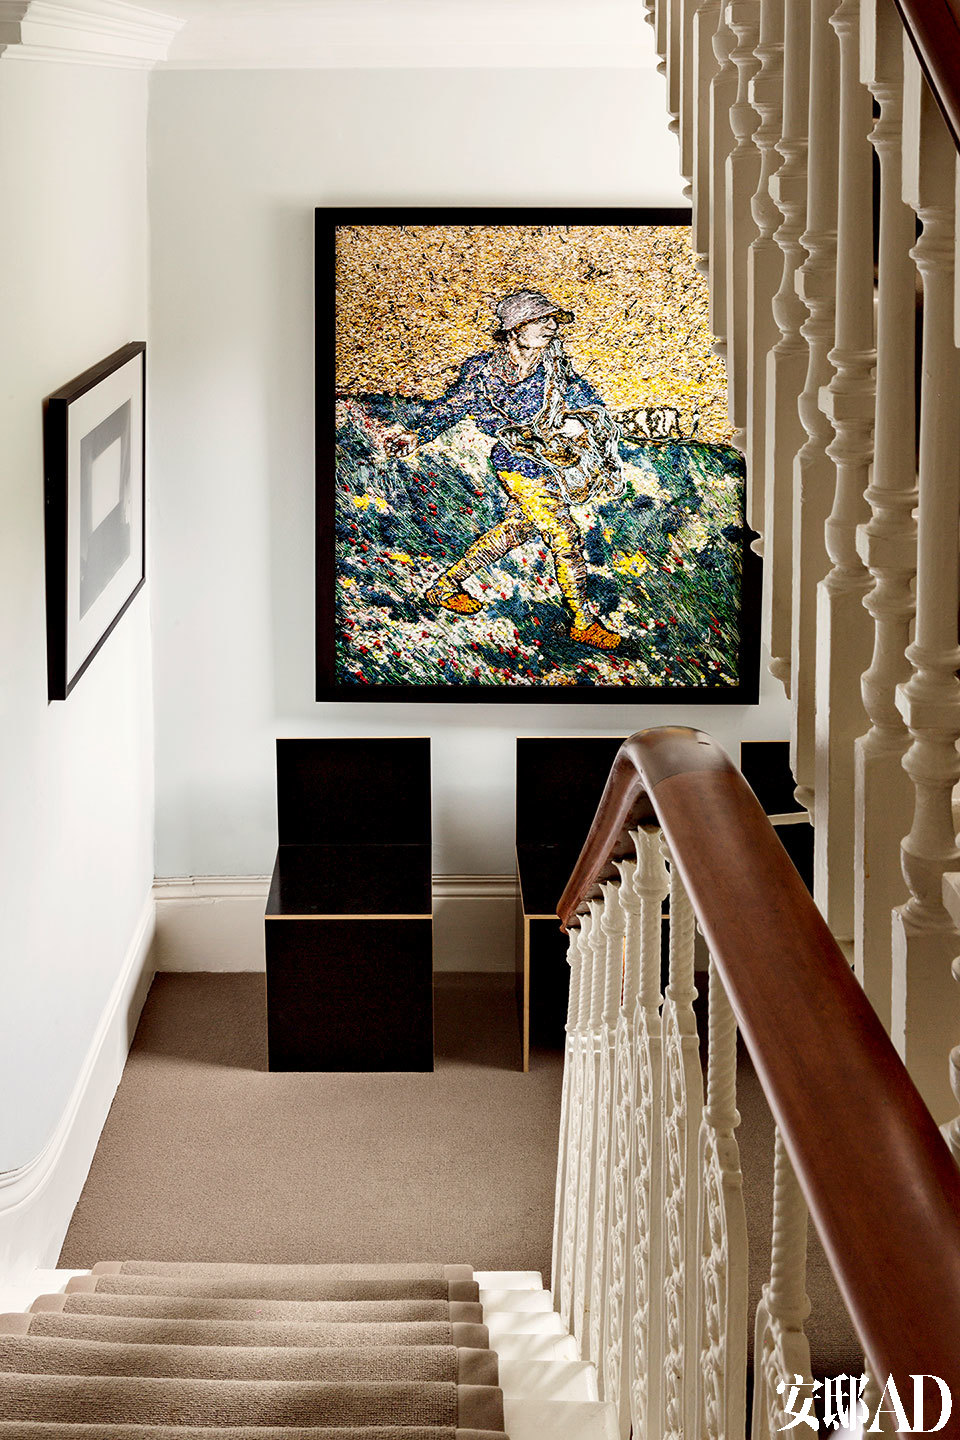 二层楼梯口处可以看到巴西艺术家Vik Muniz的画作《The Sower，after Van Gogh》。还有美国艺术家Donald Judd设计的用胶合板制作的雕塑椅。